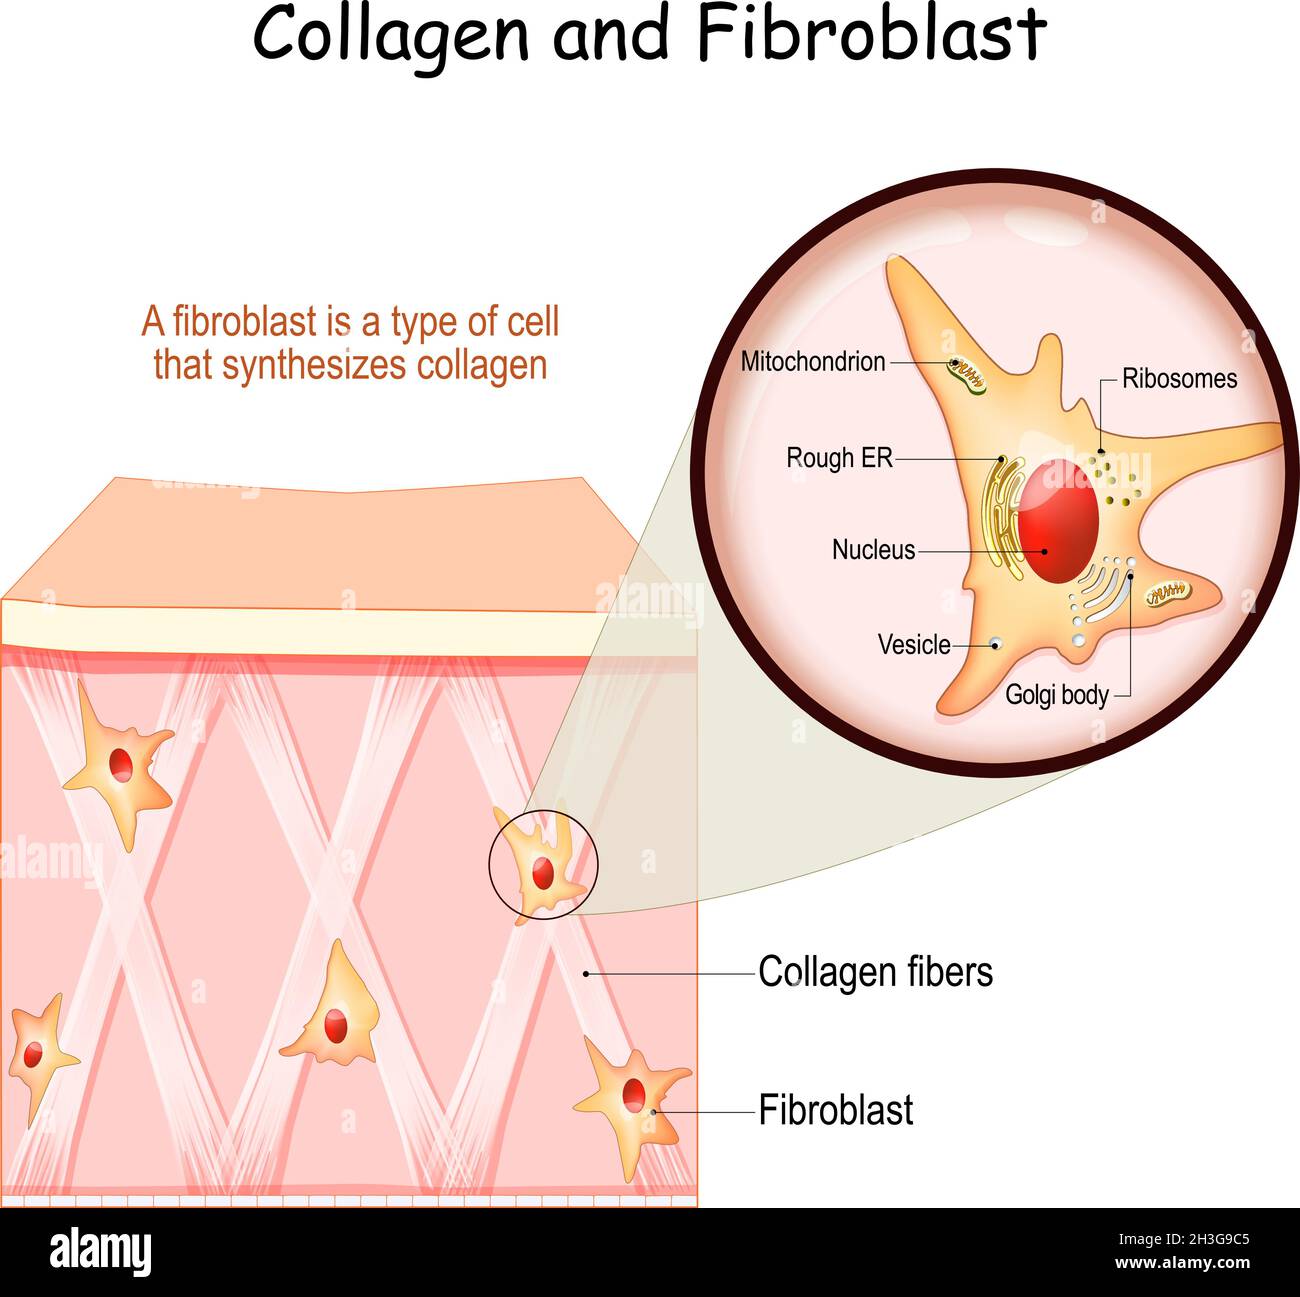 Collagene e fibroblasti. Pelle con fibre di collagene e cellule che  sintetizzano collagene. Primo piano della struttura dei fibroblasti  Immagine e Vettoriale - Alamy